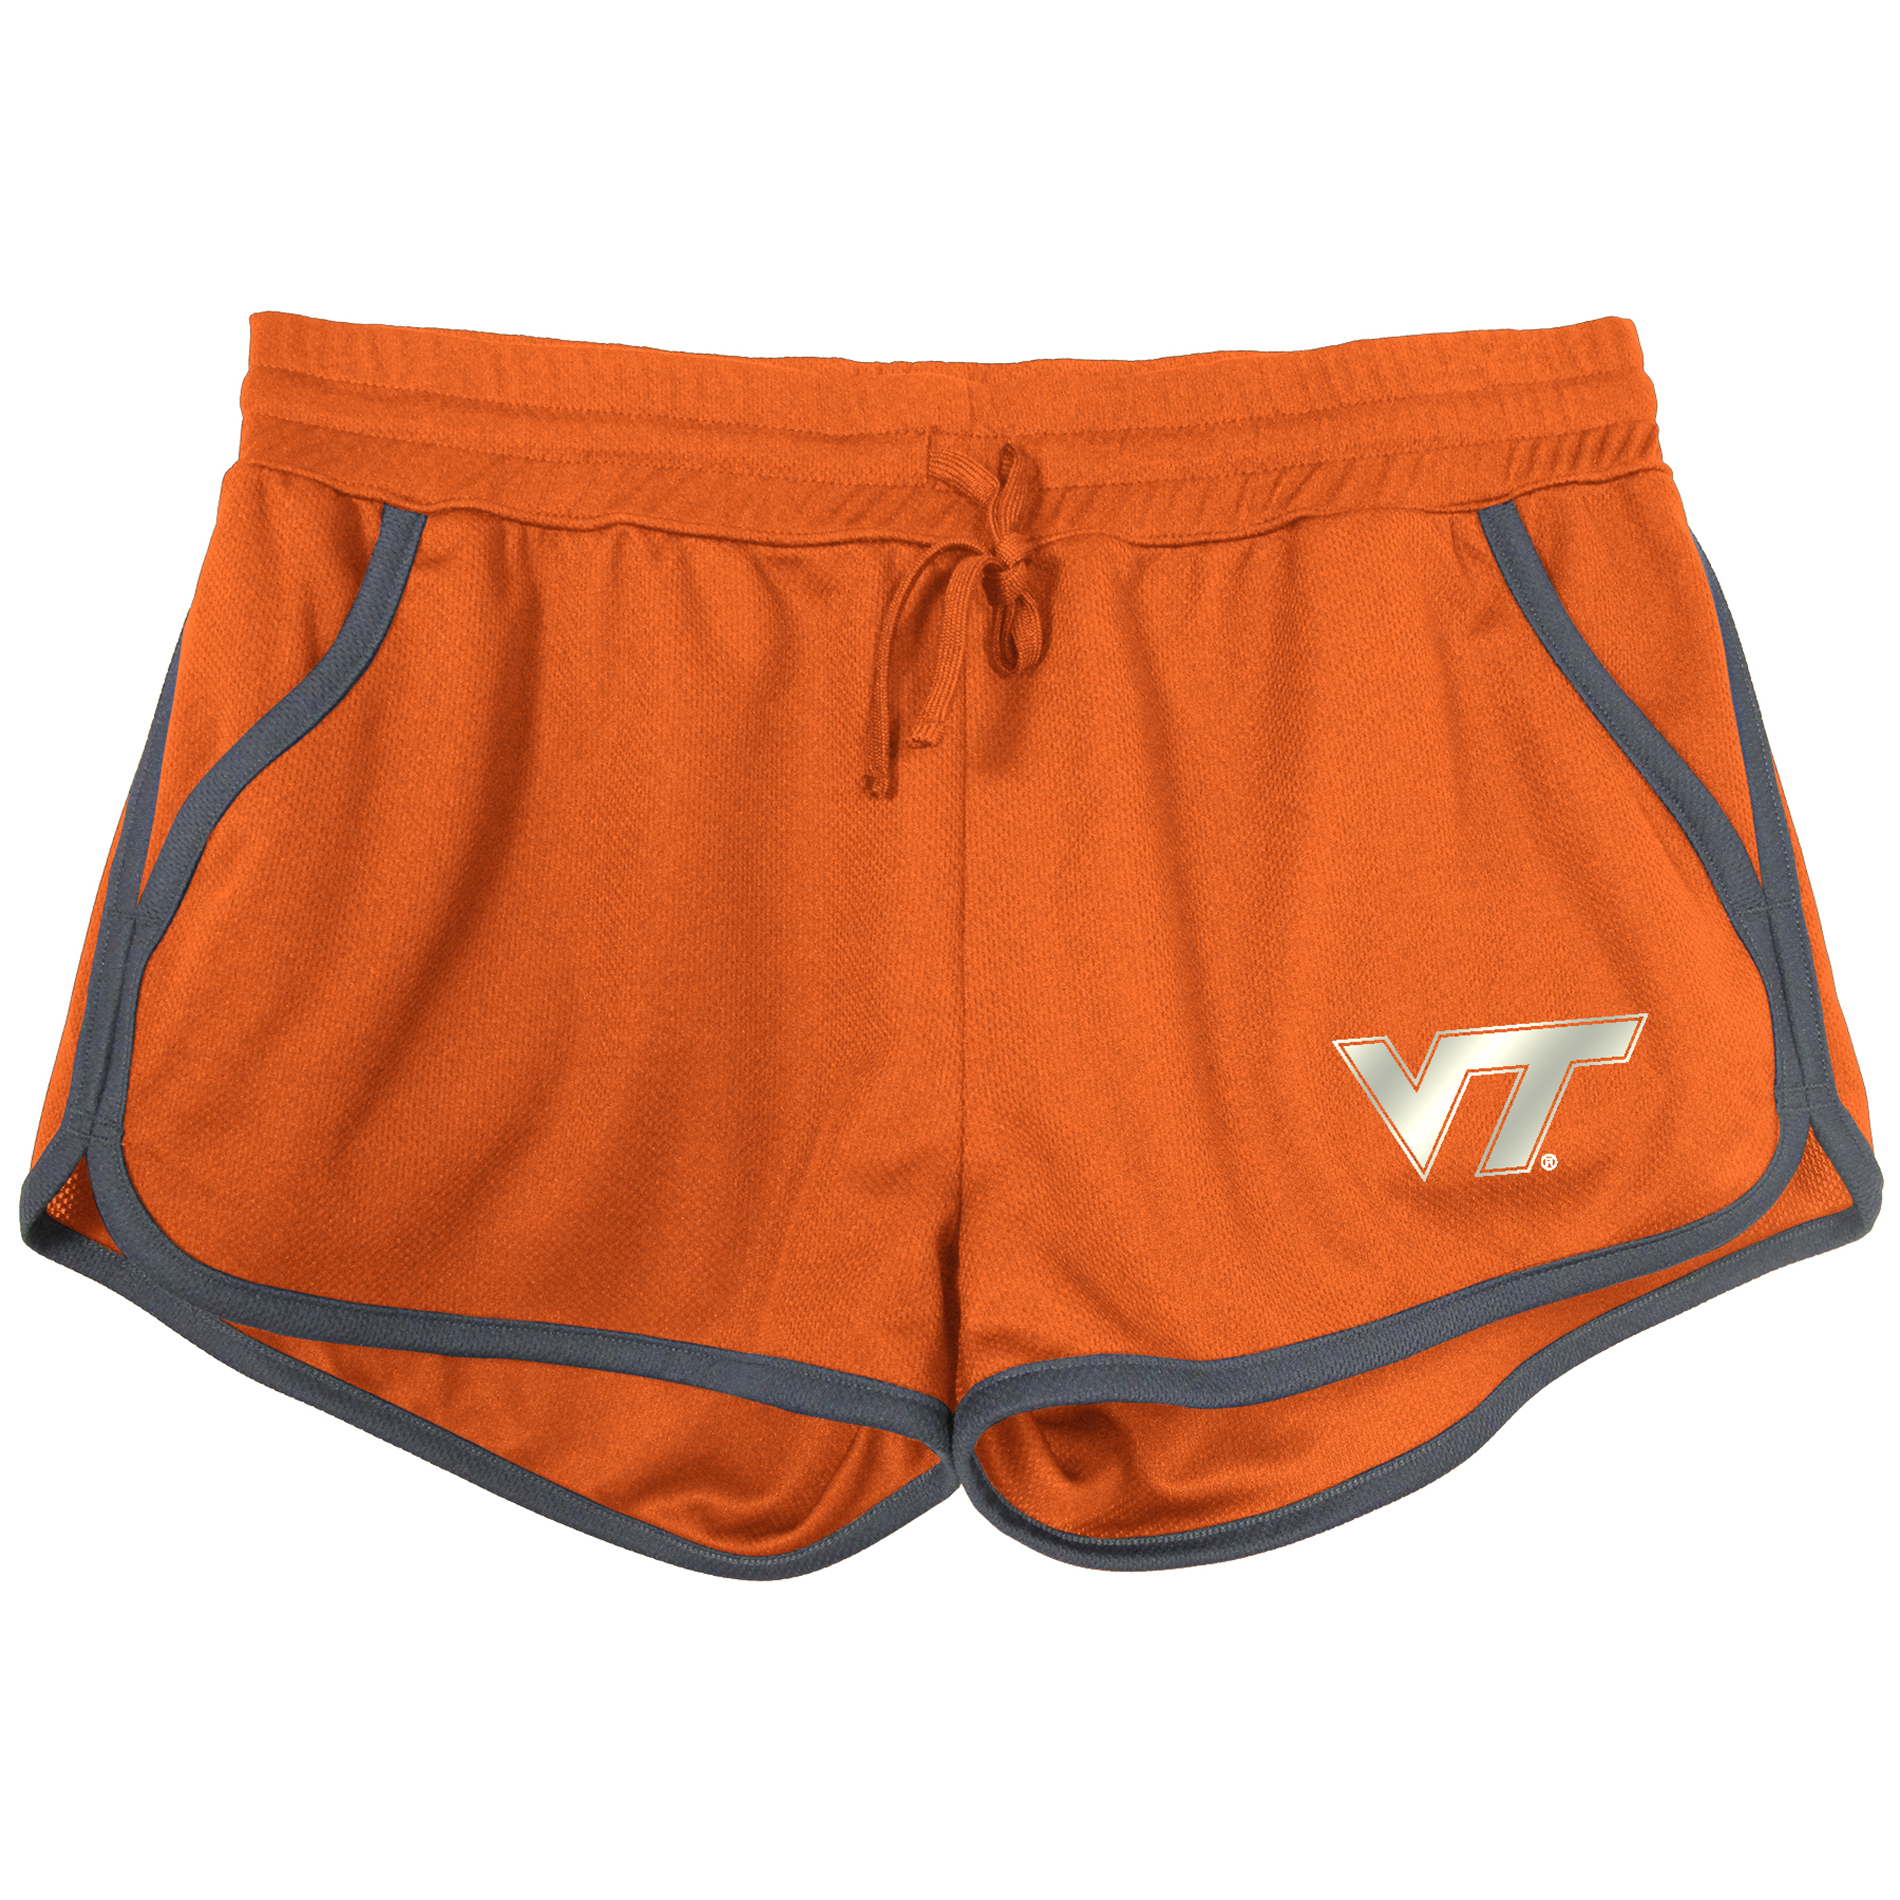 NCAA Women's Virginia Tech Hokies Mesh Shorts